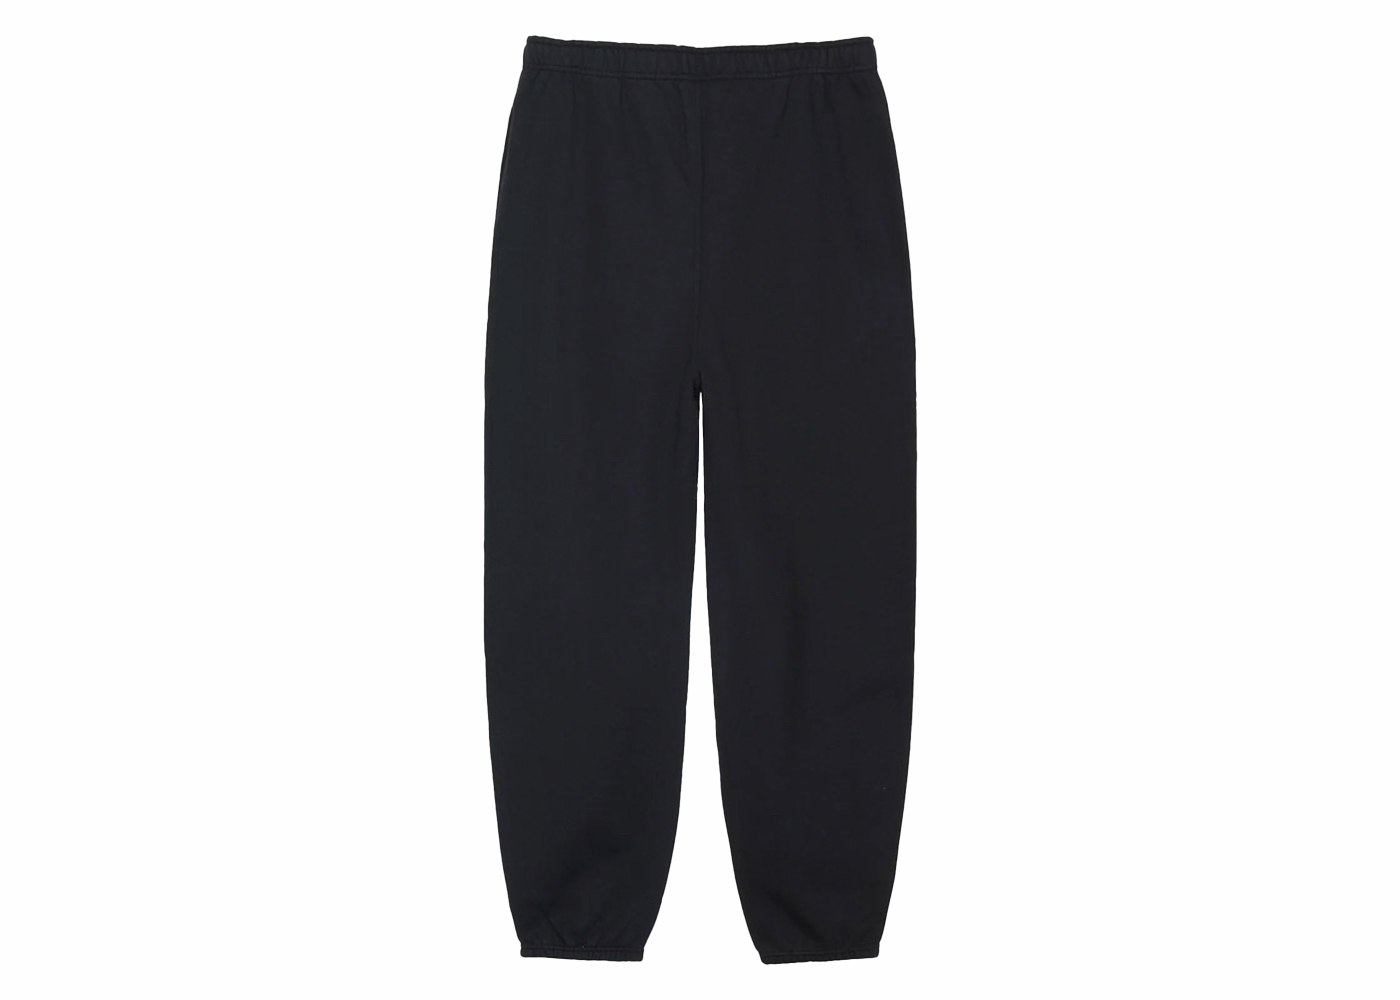 Nike x Stussy Fleece Pant - Grey Heather/Black – Goodhood